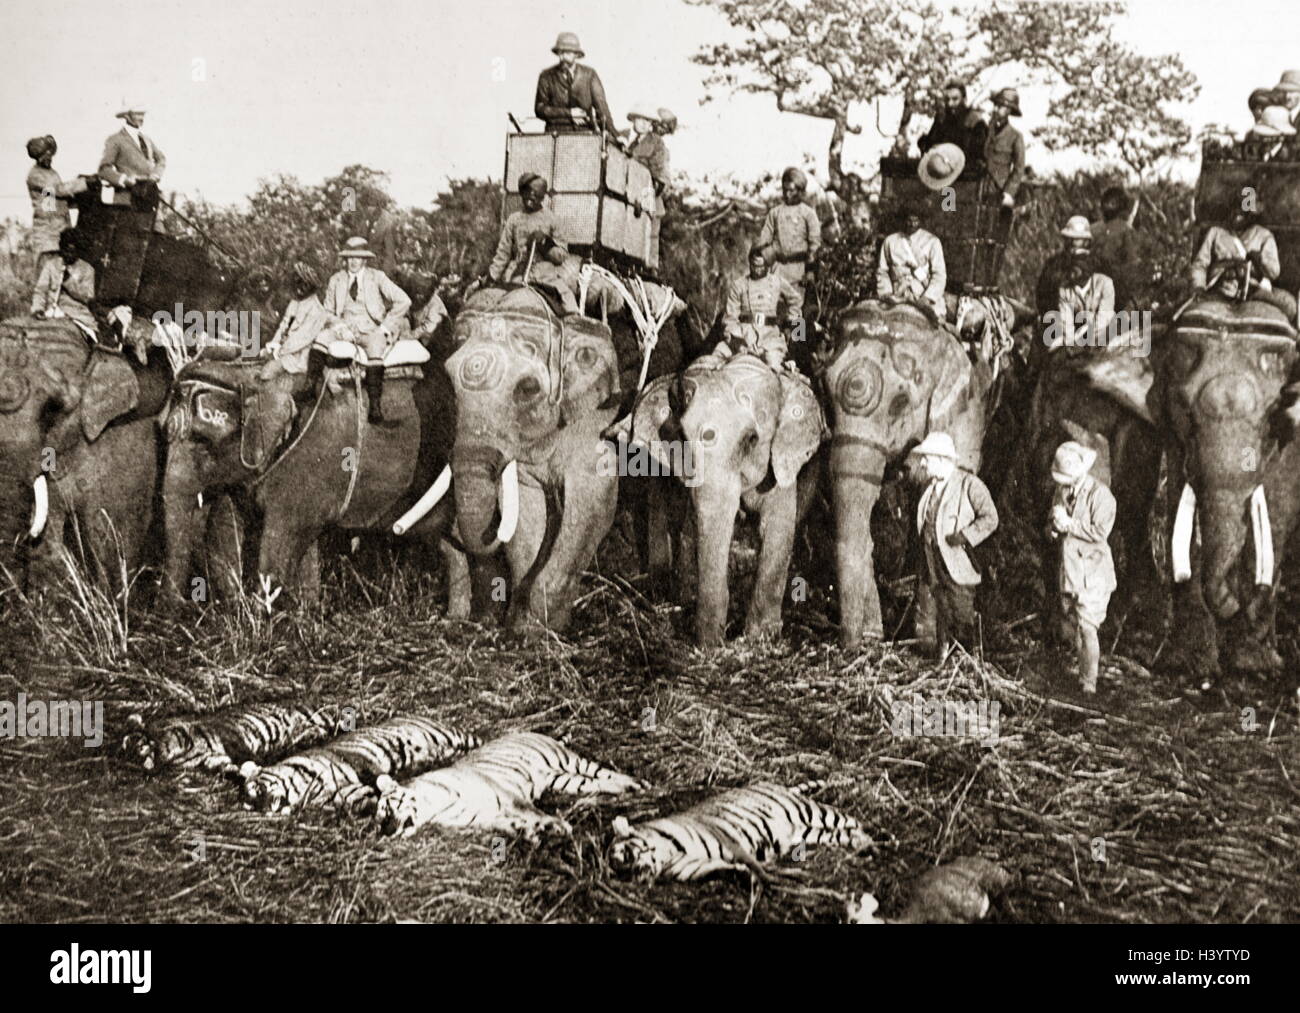 Foto von King George VI (1895-1952), König von Großbritannien und die Dominions des British Commonwealth, auf einer Jagd Expedition in Nepal. Vom 20. Jahrhundert Stockfoto